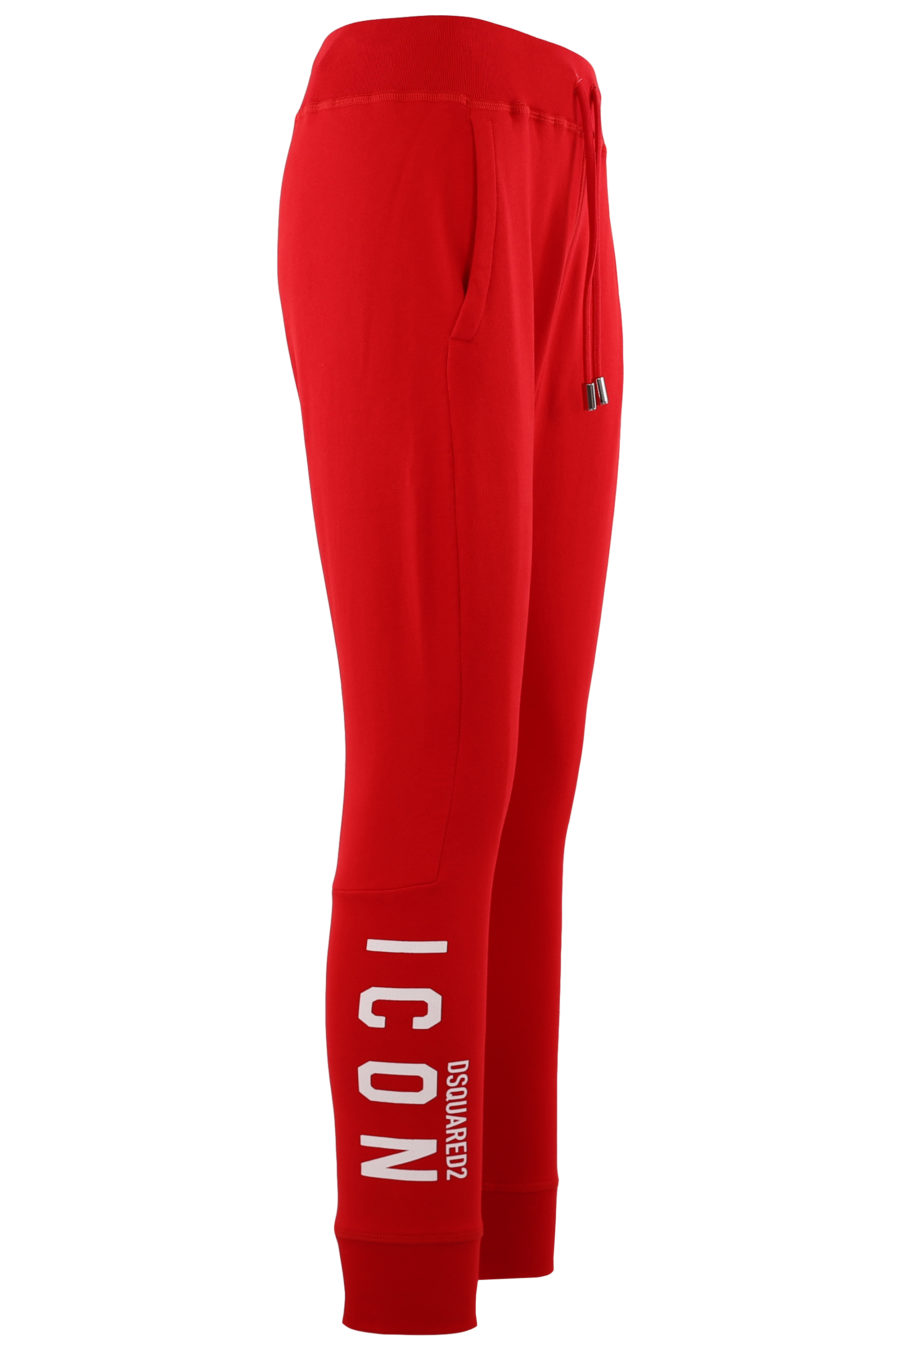 Pantalón de chándal rojo con logo blanco "Icon" - 5beb896ca876a4804a938743690c93c79a8df47b